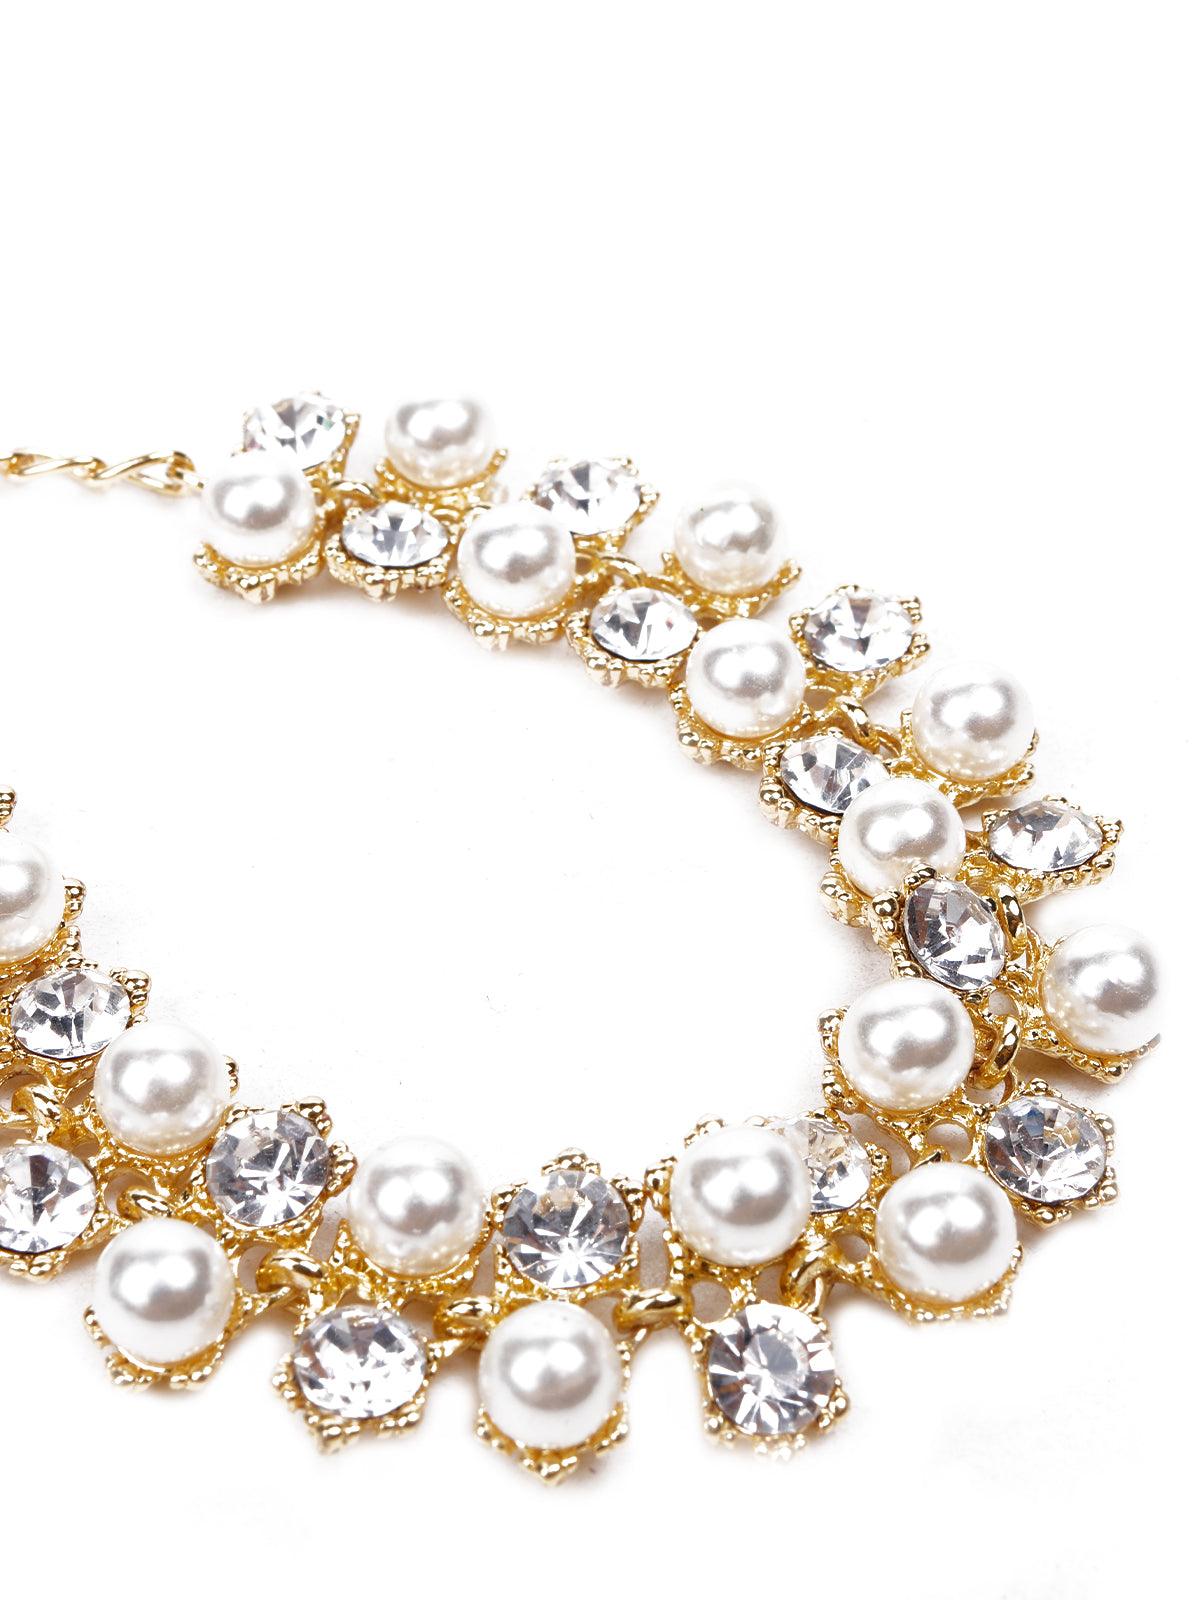 Gold bracelet embellished with crystals and pearls - Odette